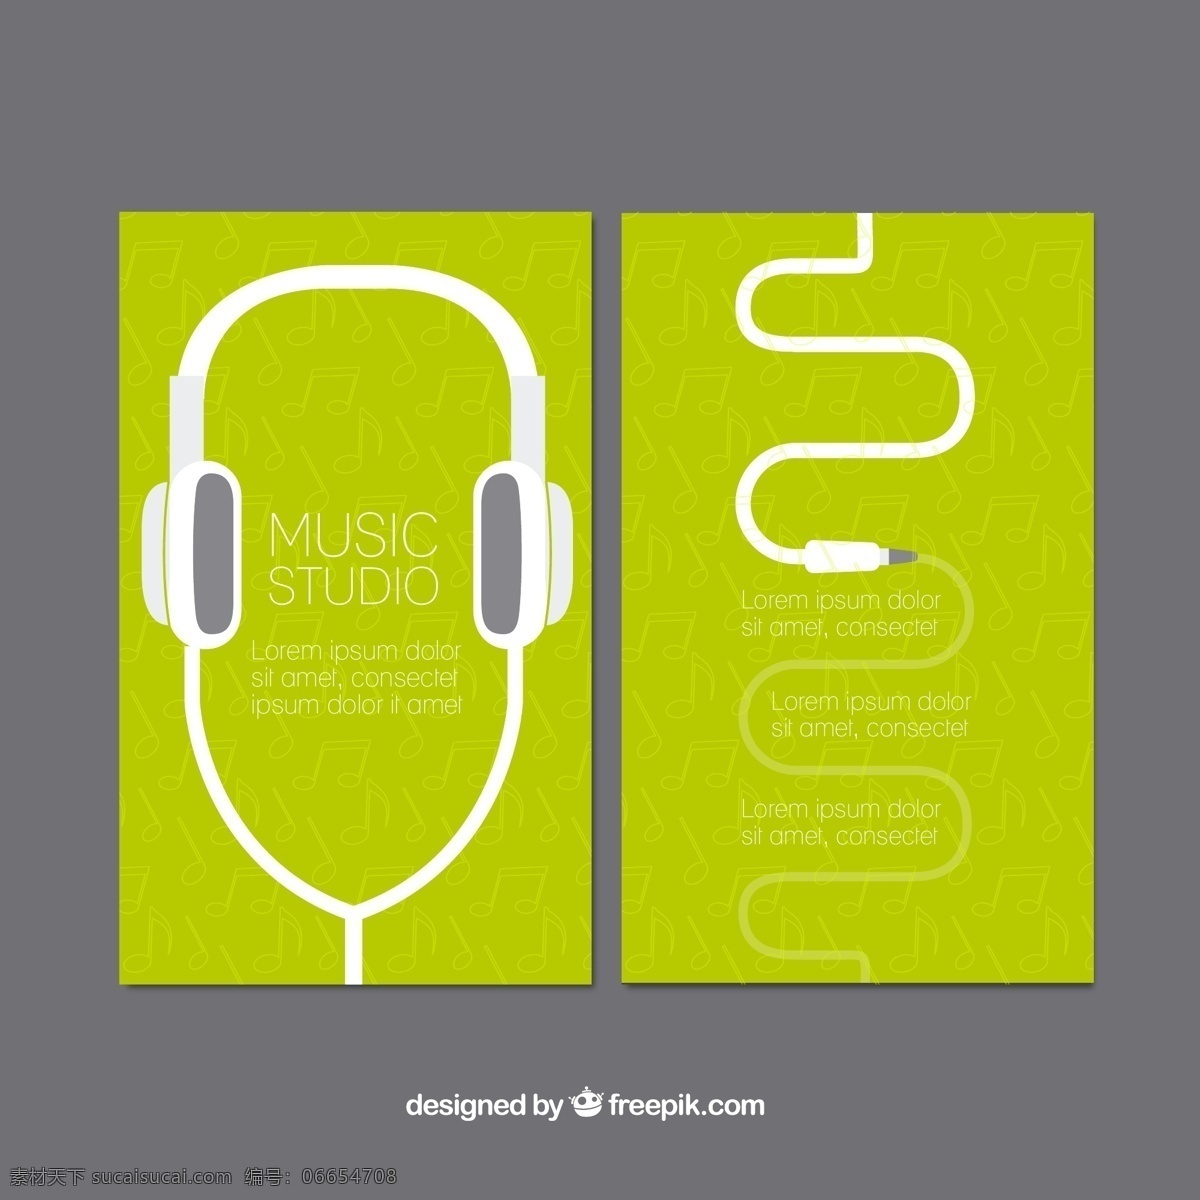 戴 耳机 听 音乐 学习 绿卡 戴耳机 听音乐 绿色卡片